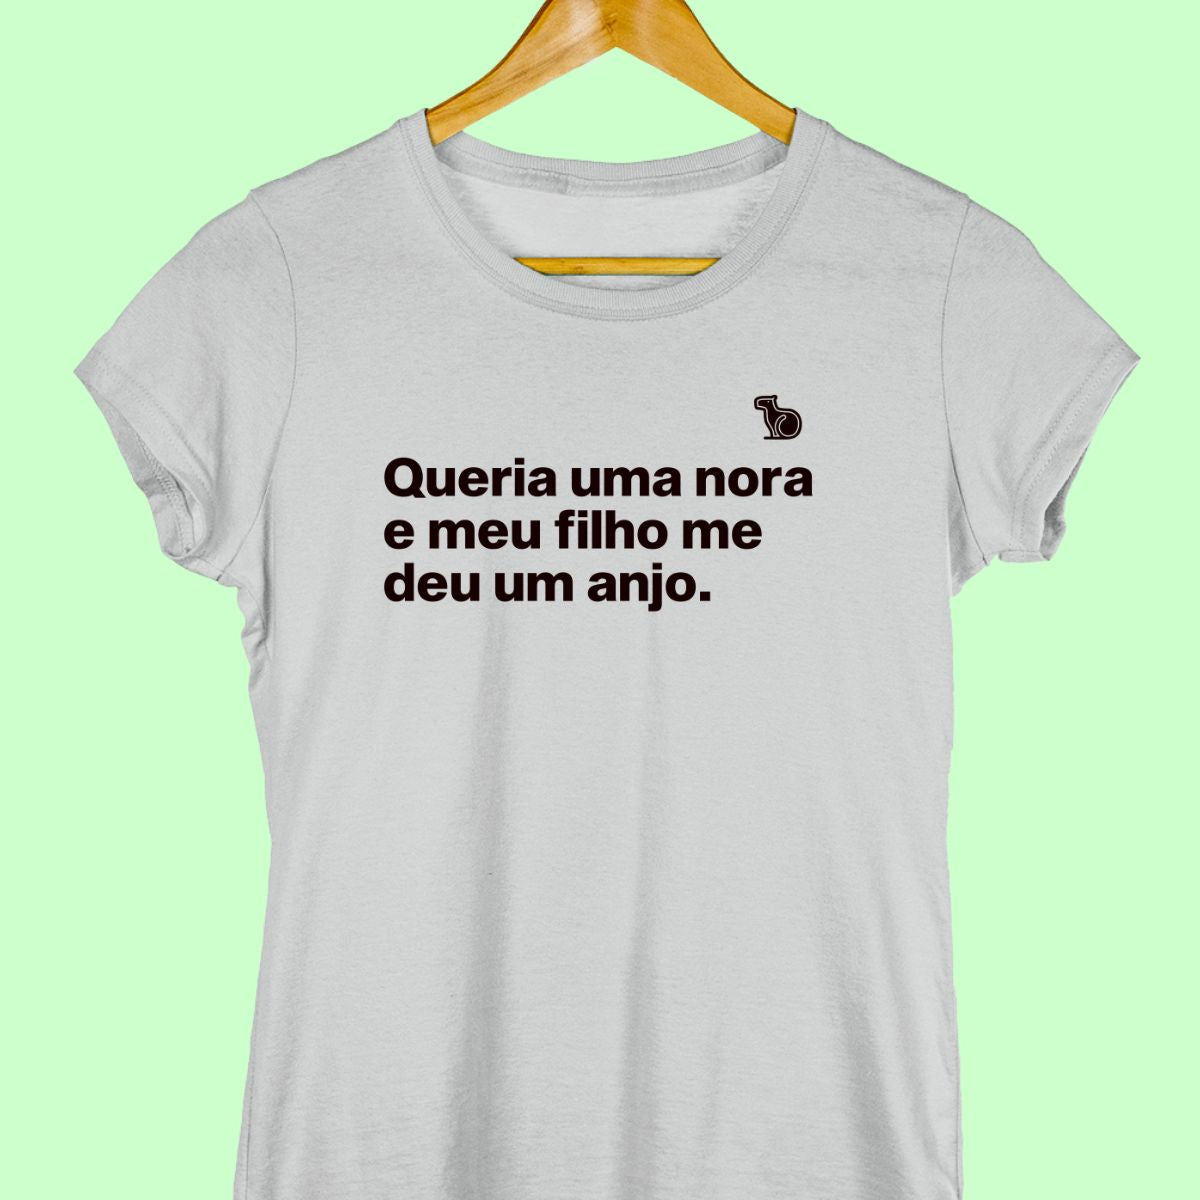 Camiseta com a frase "Queria uma nora e meu filho me deu um anjo." feminina cinza.